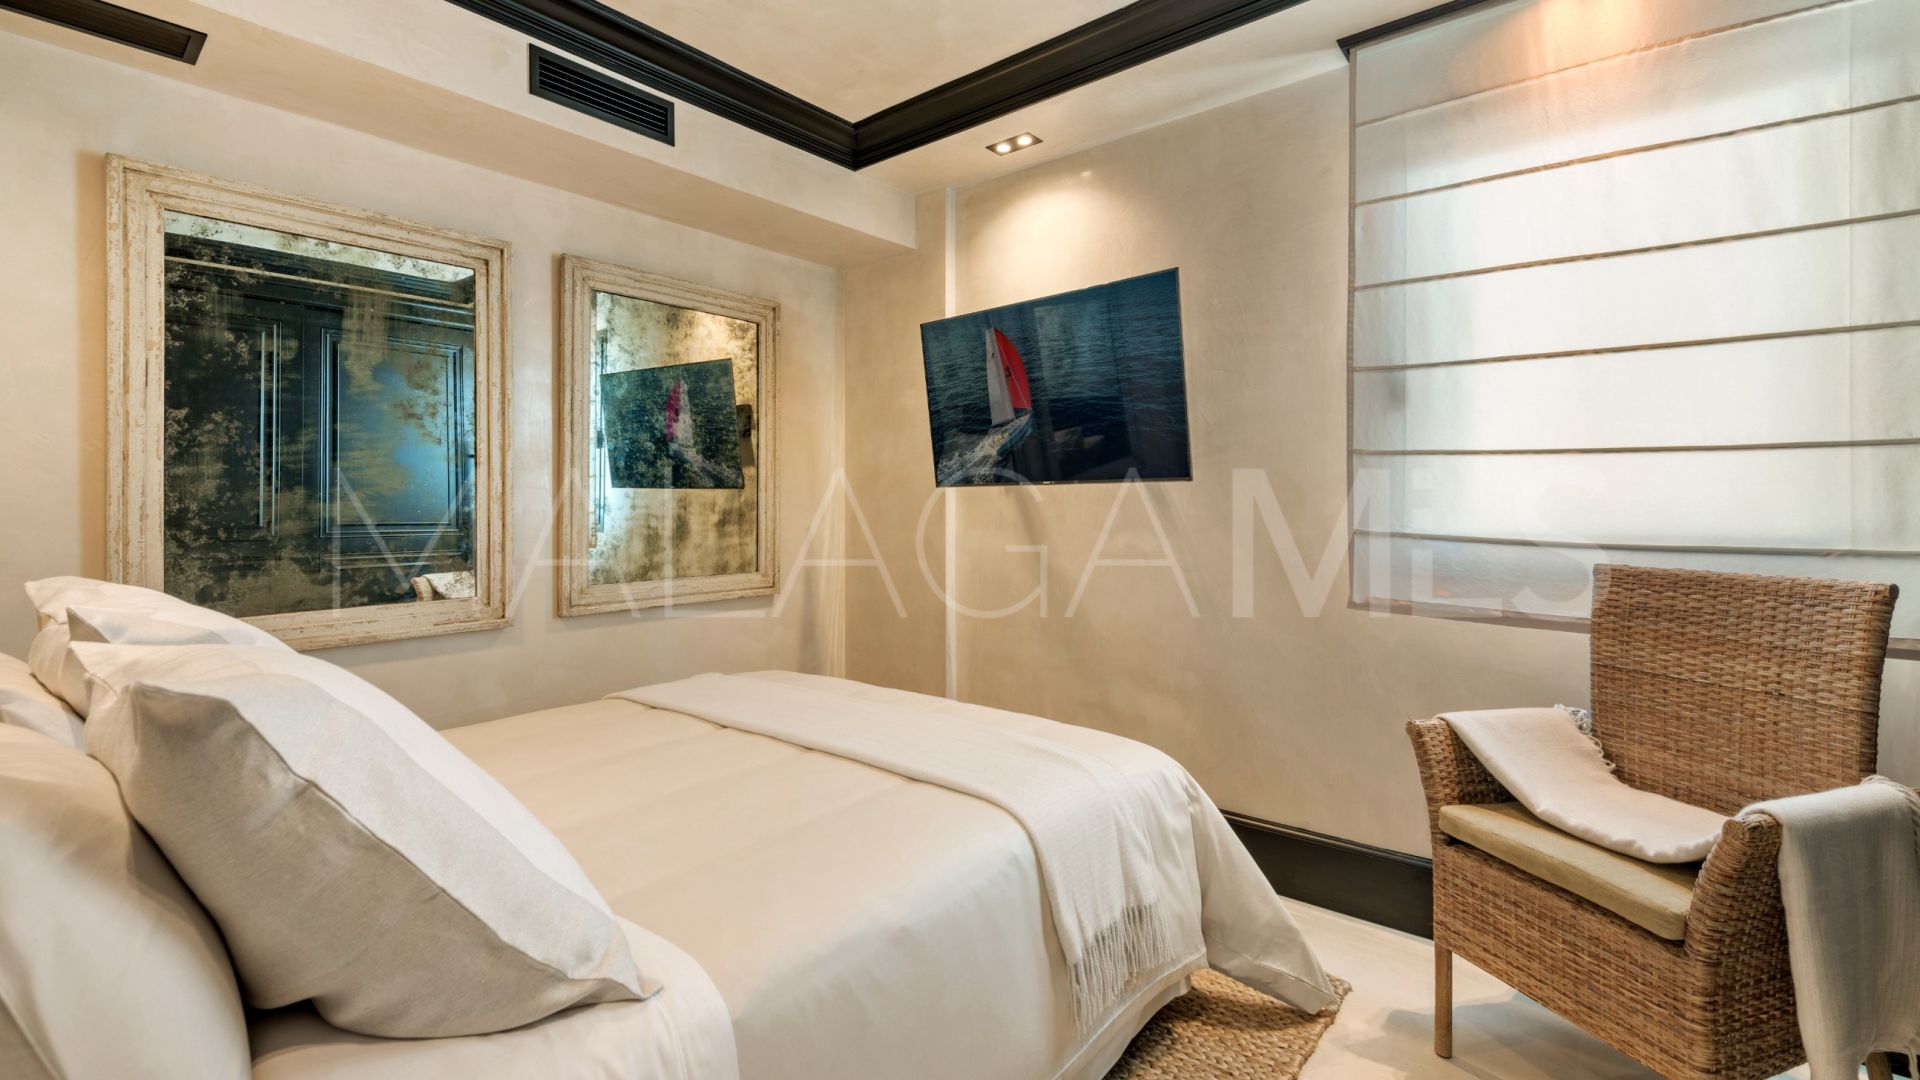 Se vende atico duplex de 3 bedrooms in Playa Esmeralda